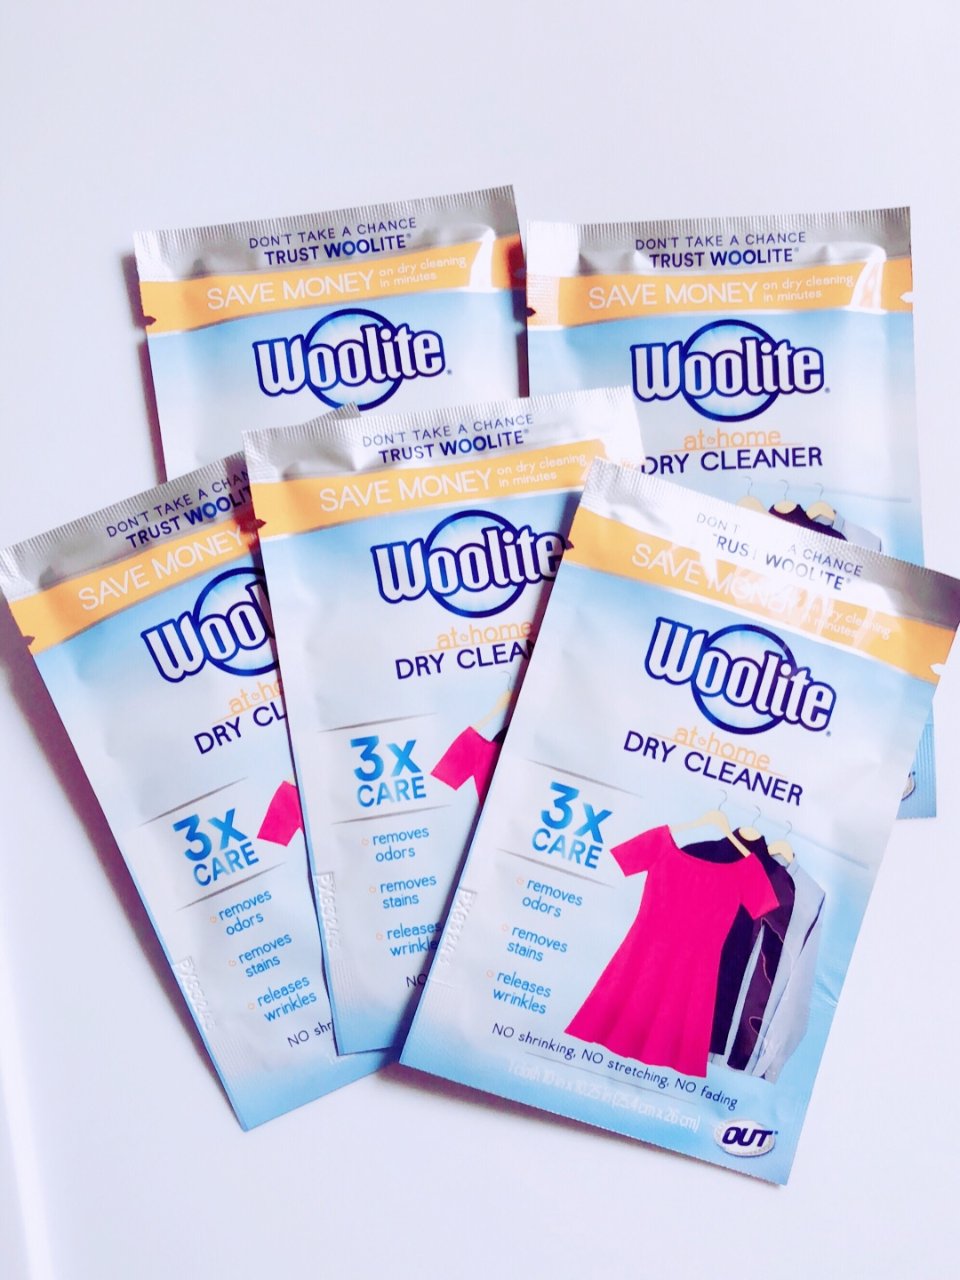 Woolite dry cleaner 8.99